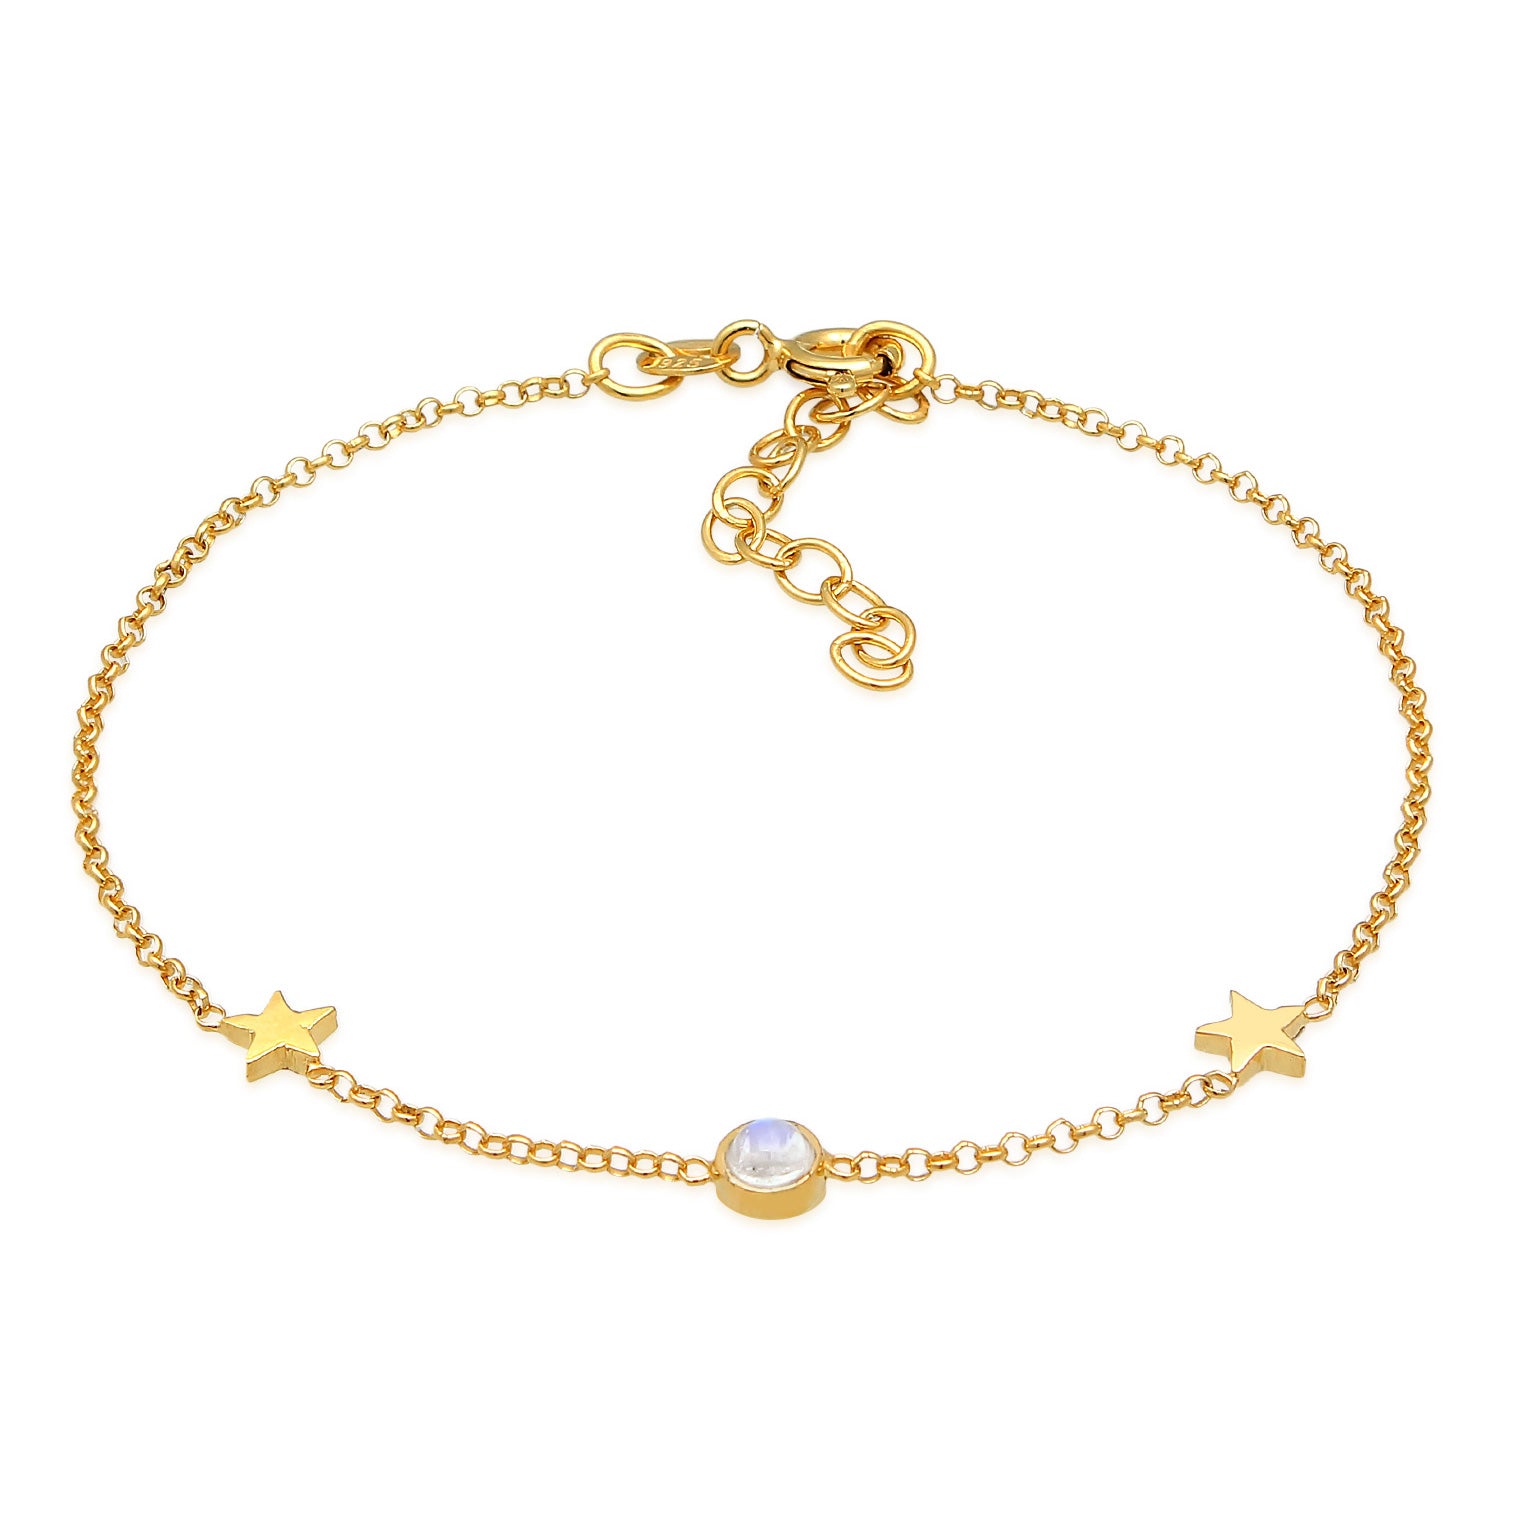 Page online – Elli\'s shop in Jewelry – Elli Buy 4 bracelets